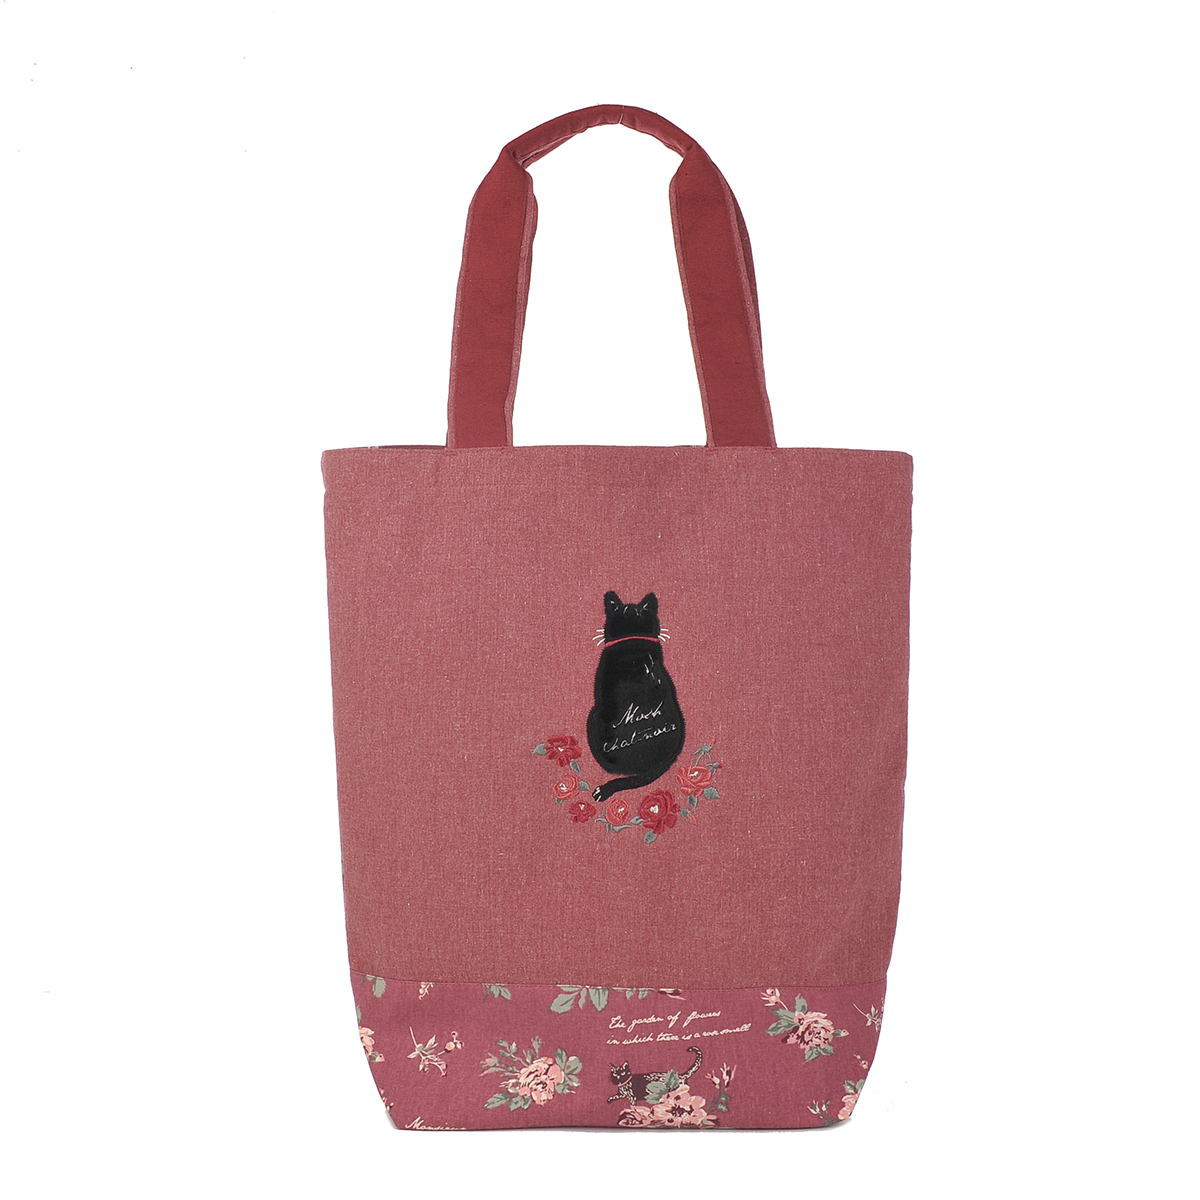 バッグ おしゃれ かわいい ネコ 花柄 バラ 黒猫ムッシュ君・ローズガーデン トートバック 21-3066 #1/RD #2/BL クスグルジャパン